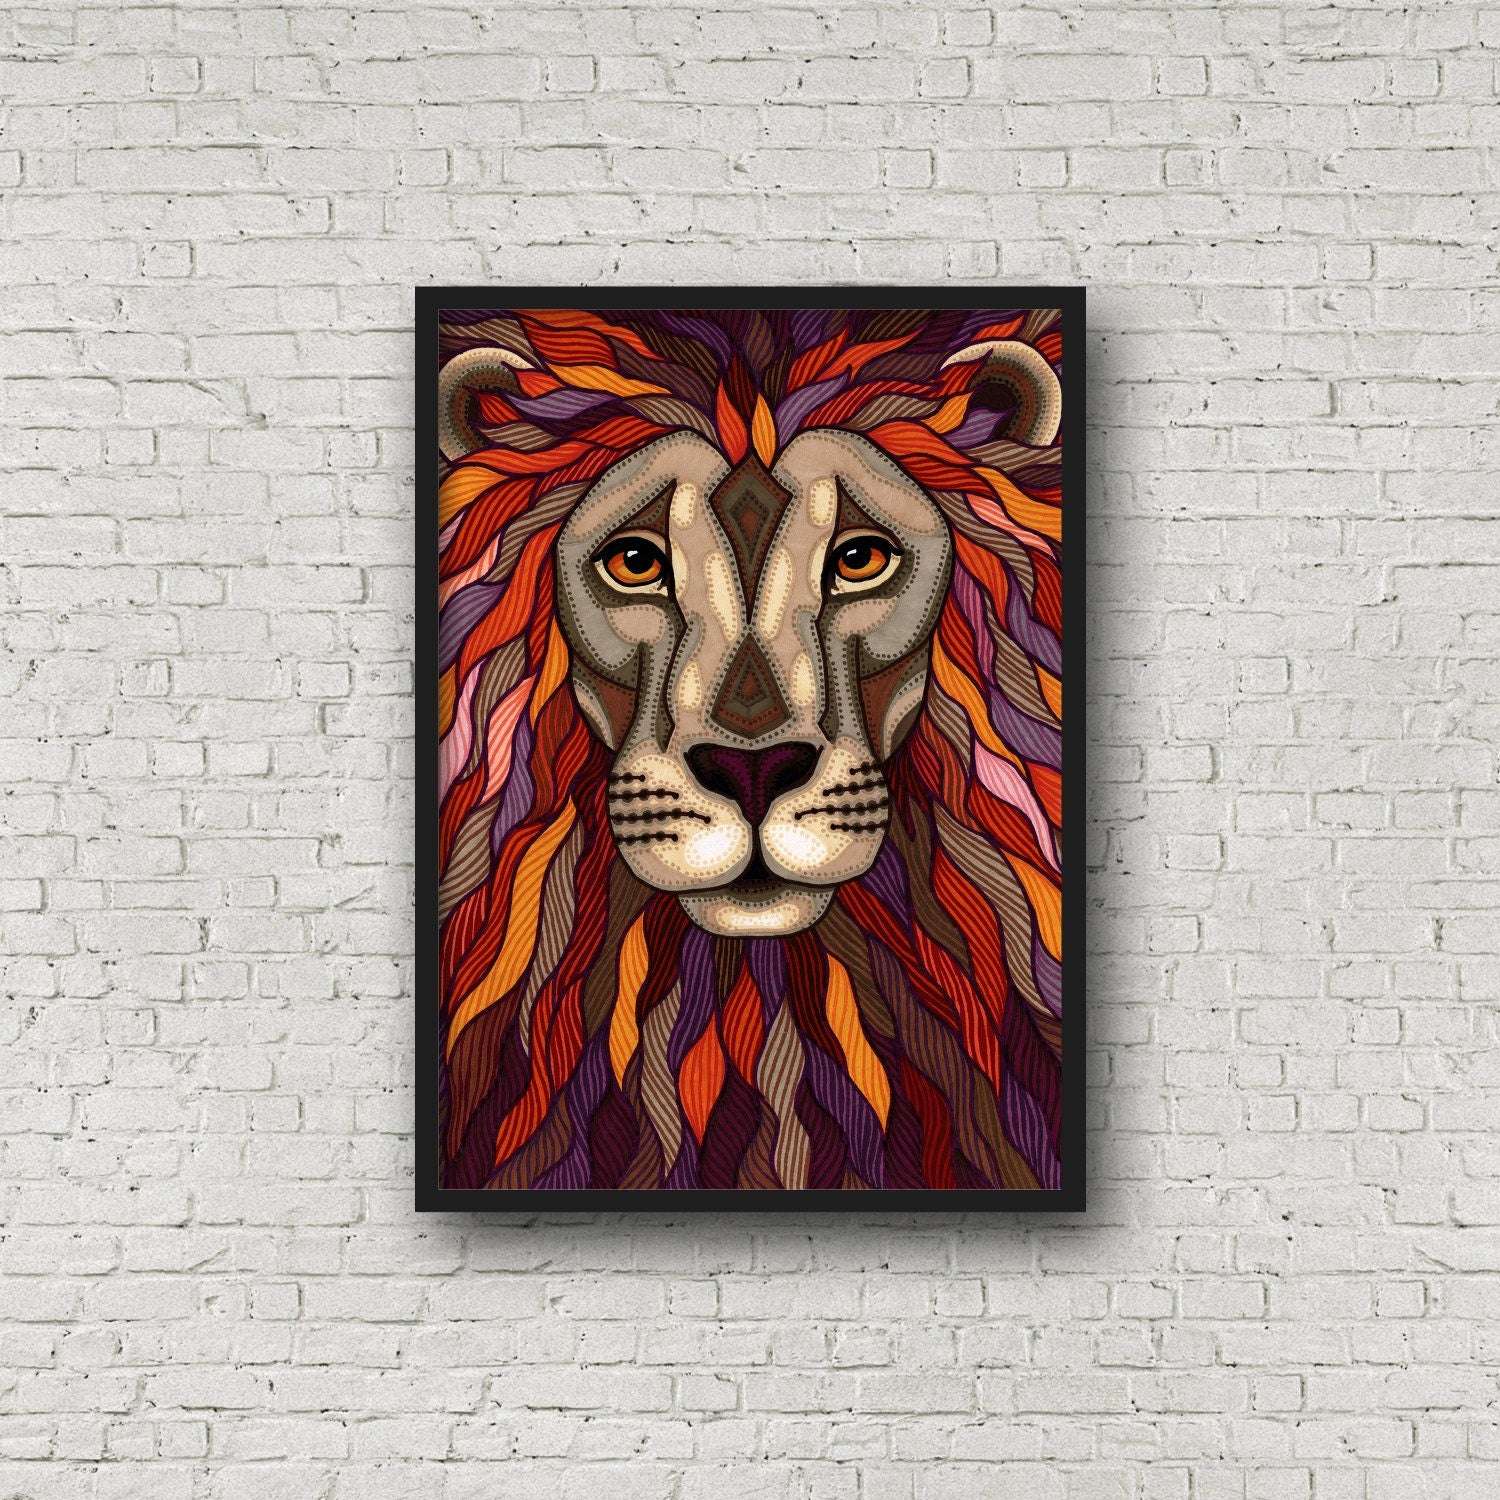 Framed lion portrait marker illustration art print on a brick wall.